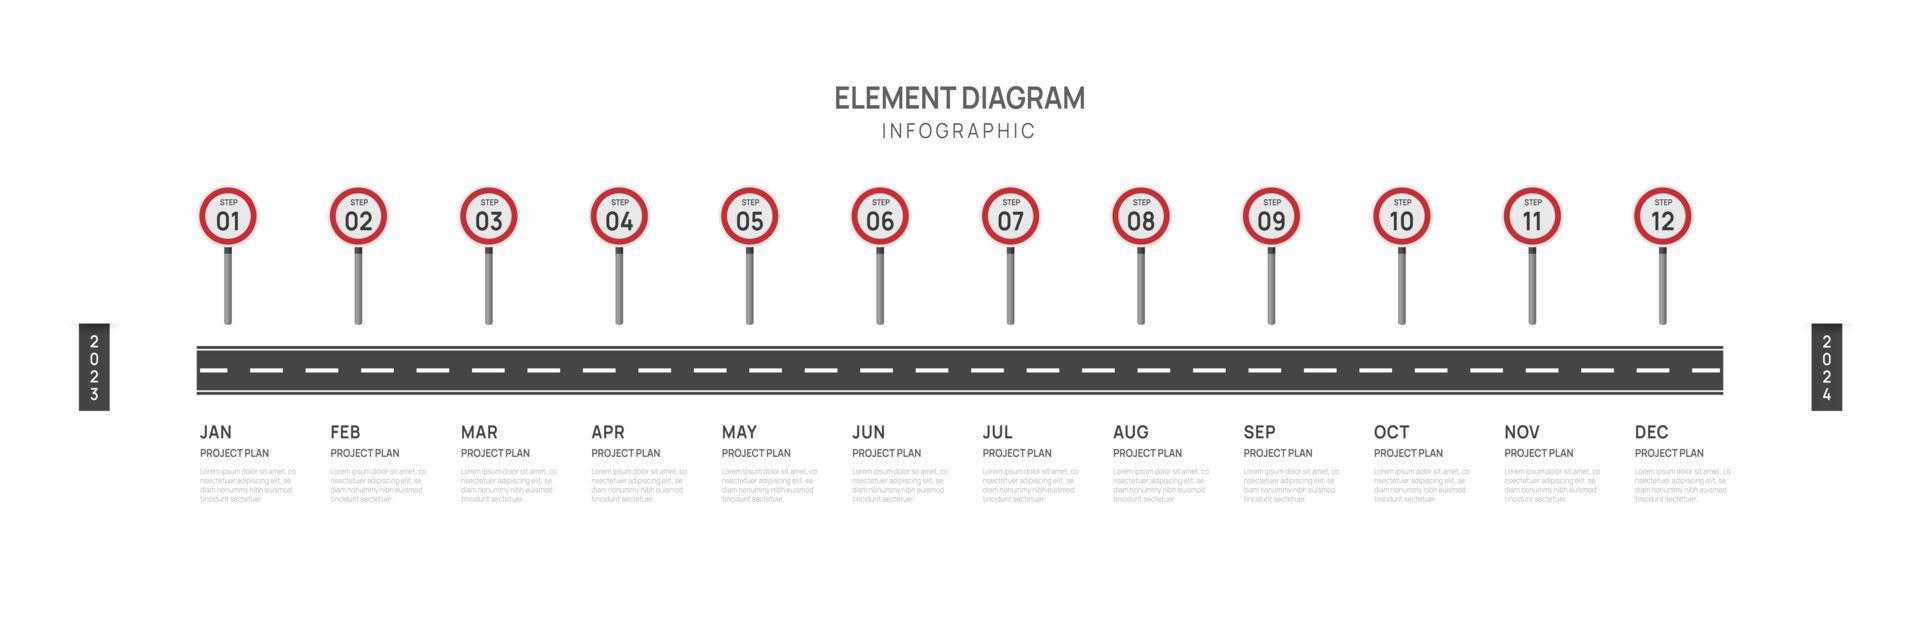 Infografica tabella di marcia modello per attività commerciale. 12 mesi moderno sequenza temporale elemento diagramma calendario, 4 trimestre passaggi pietra miliare presentazione vettore infografica.